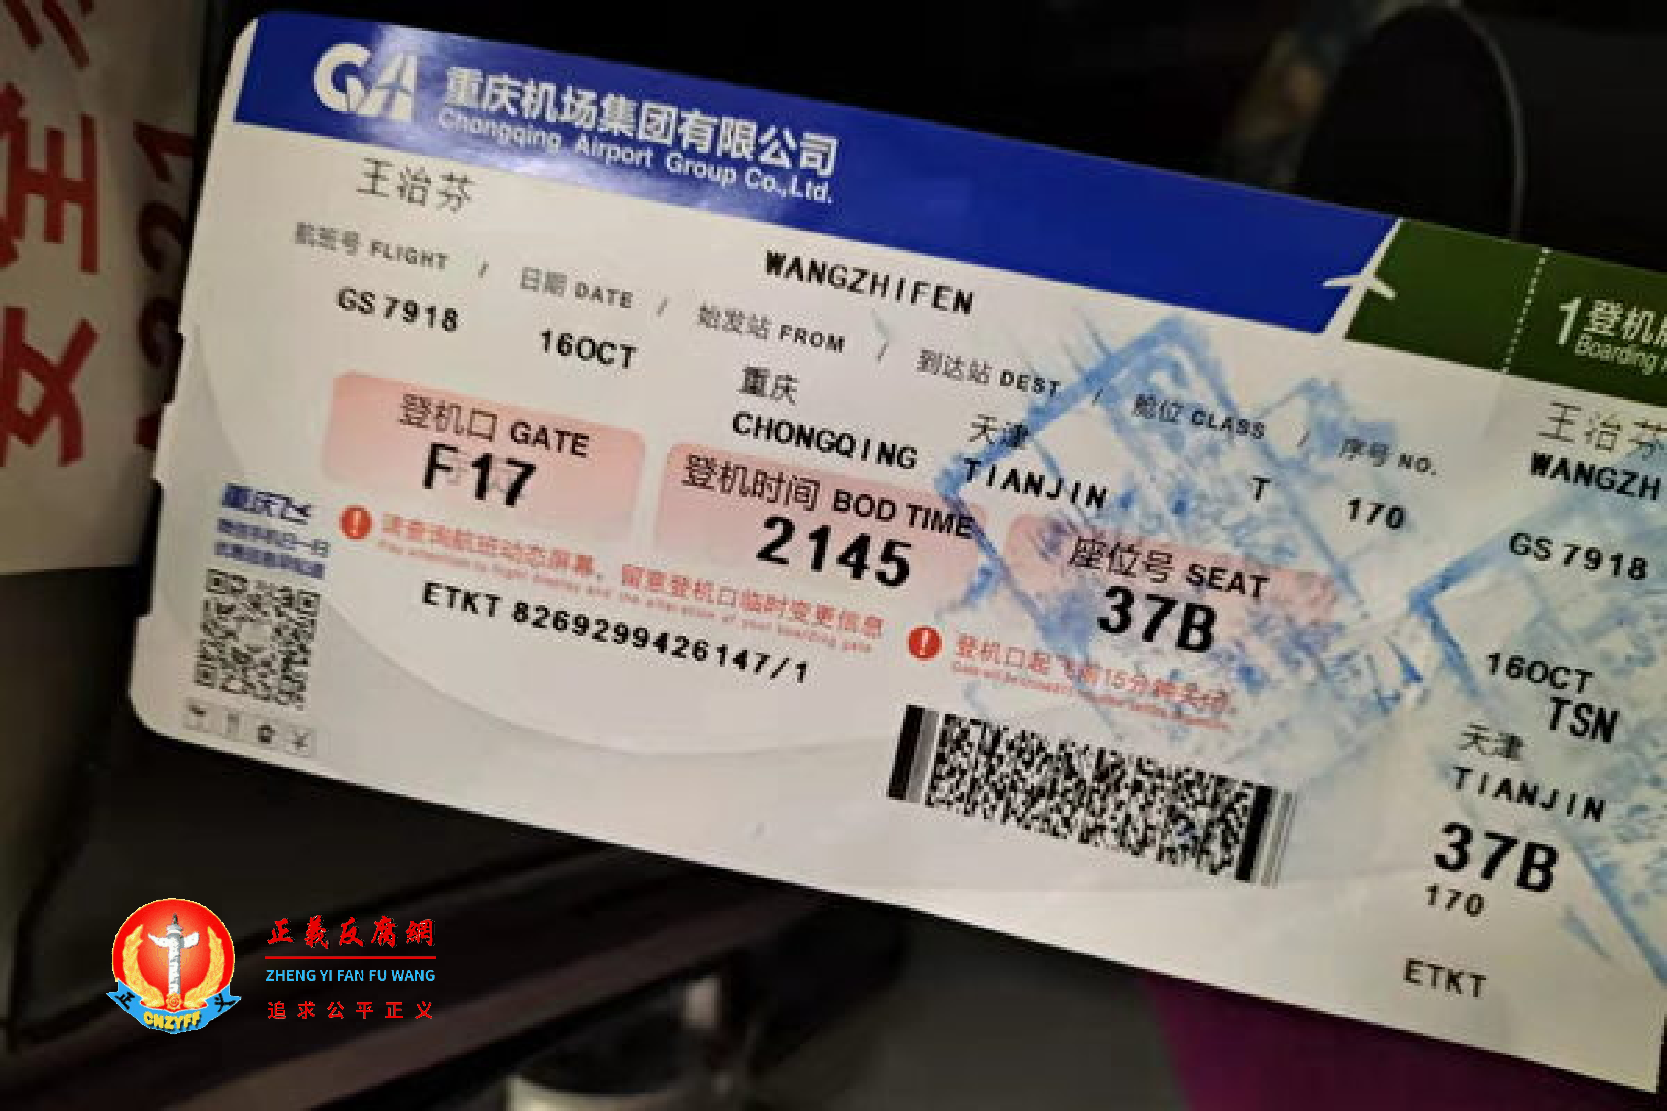 10月16日，重庆访民王治芬从重庆江北机场搭乘班机到天津的机票。班机刚抵达天津就被警方带走。.png